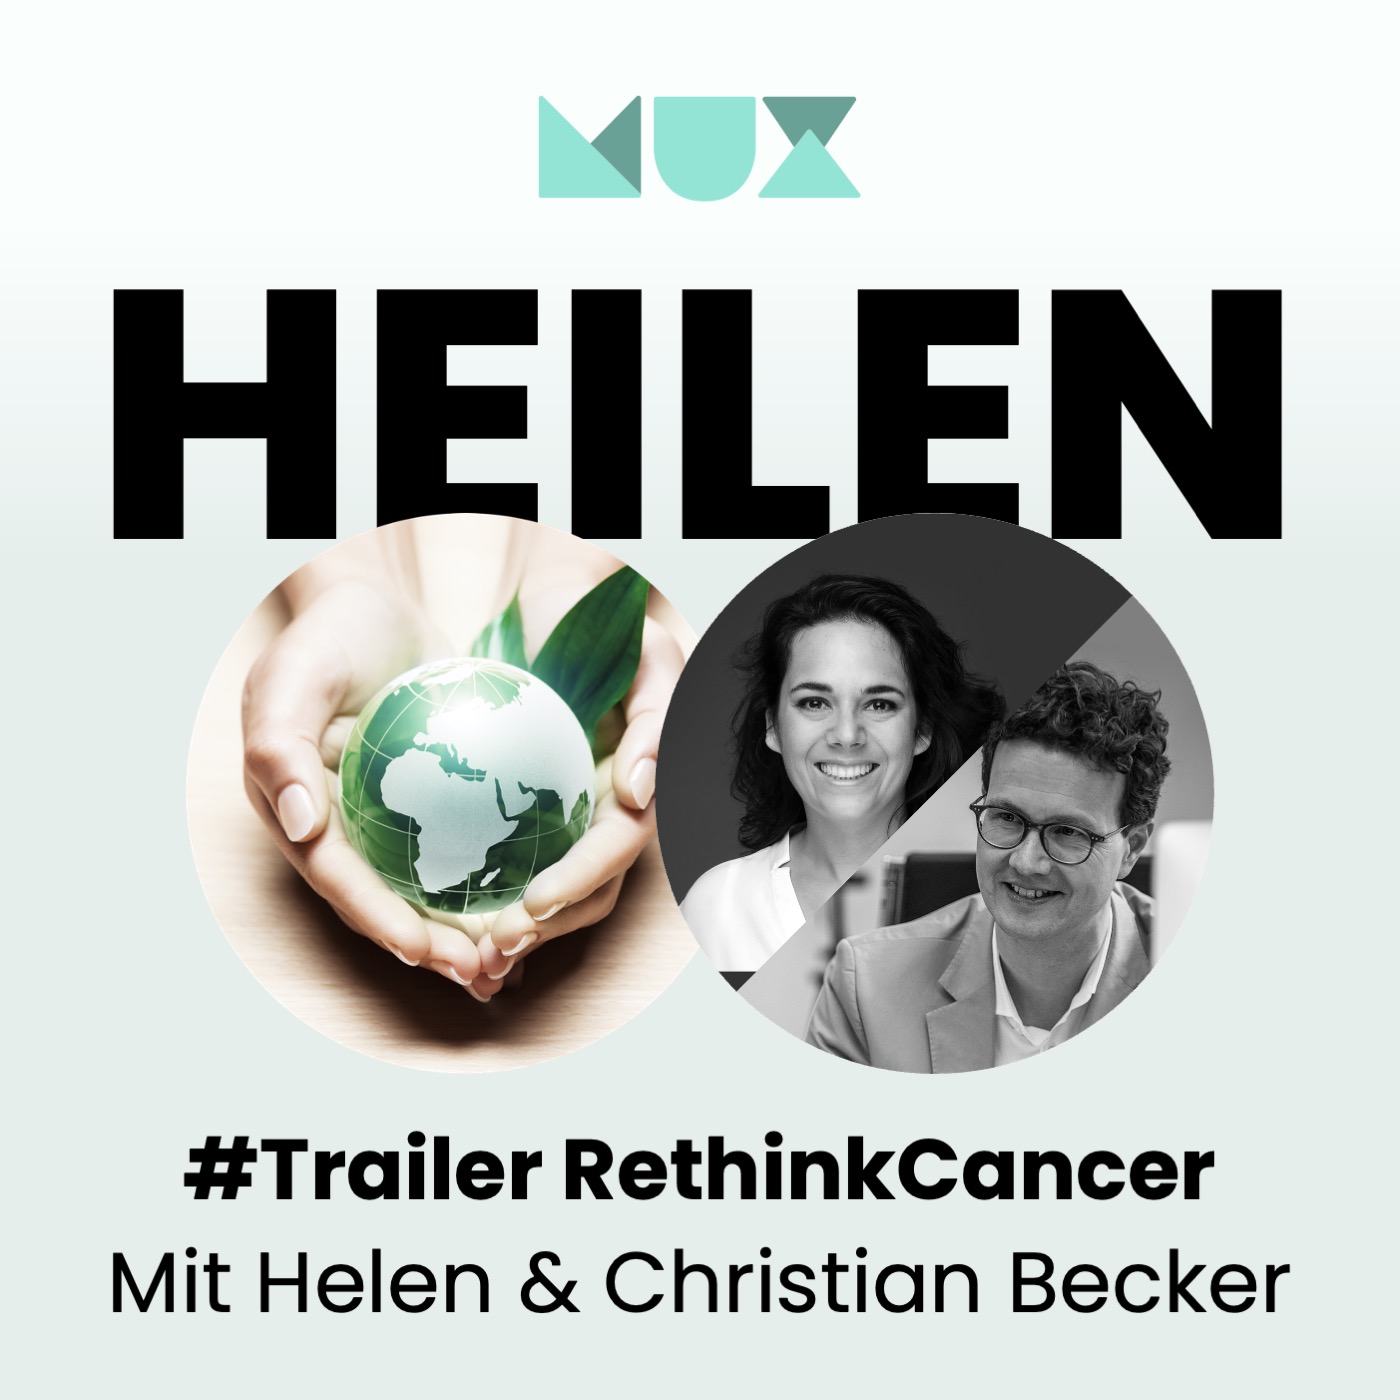 HEILEN. Trailer – RethinkCancer